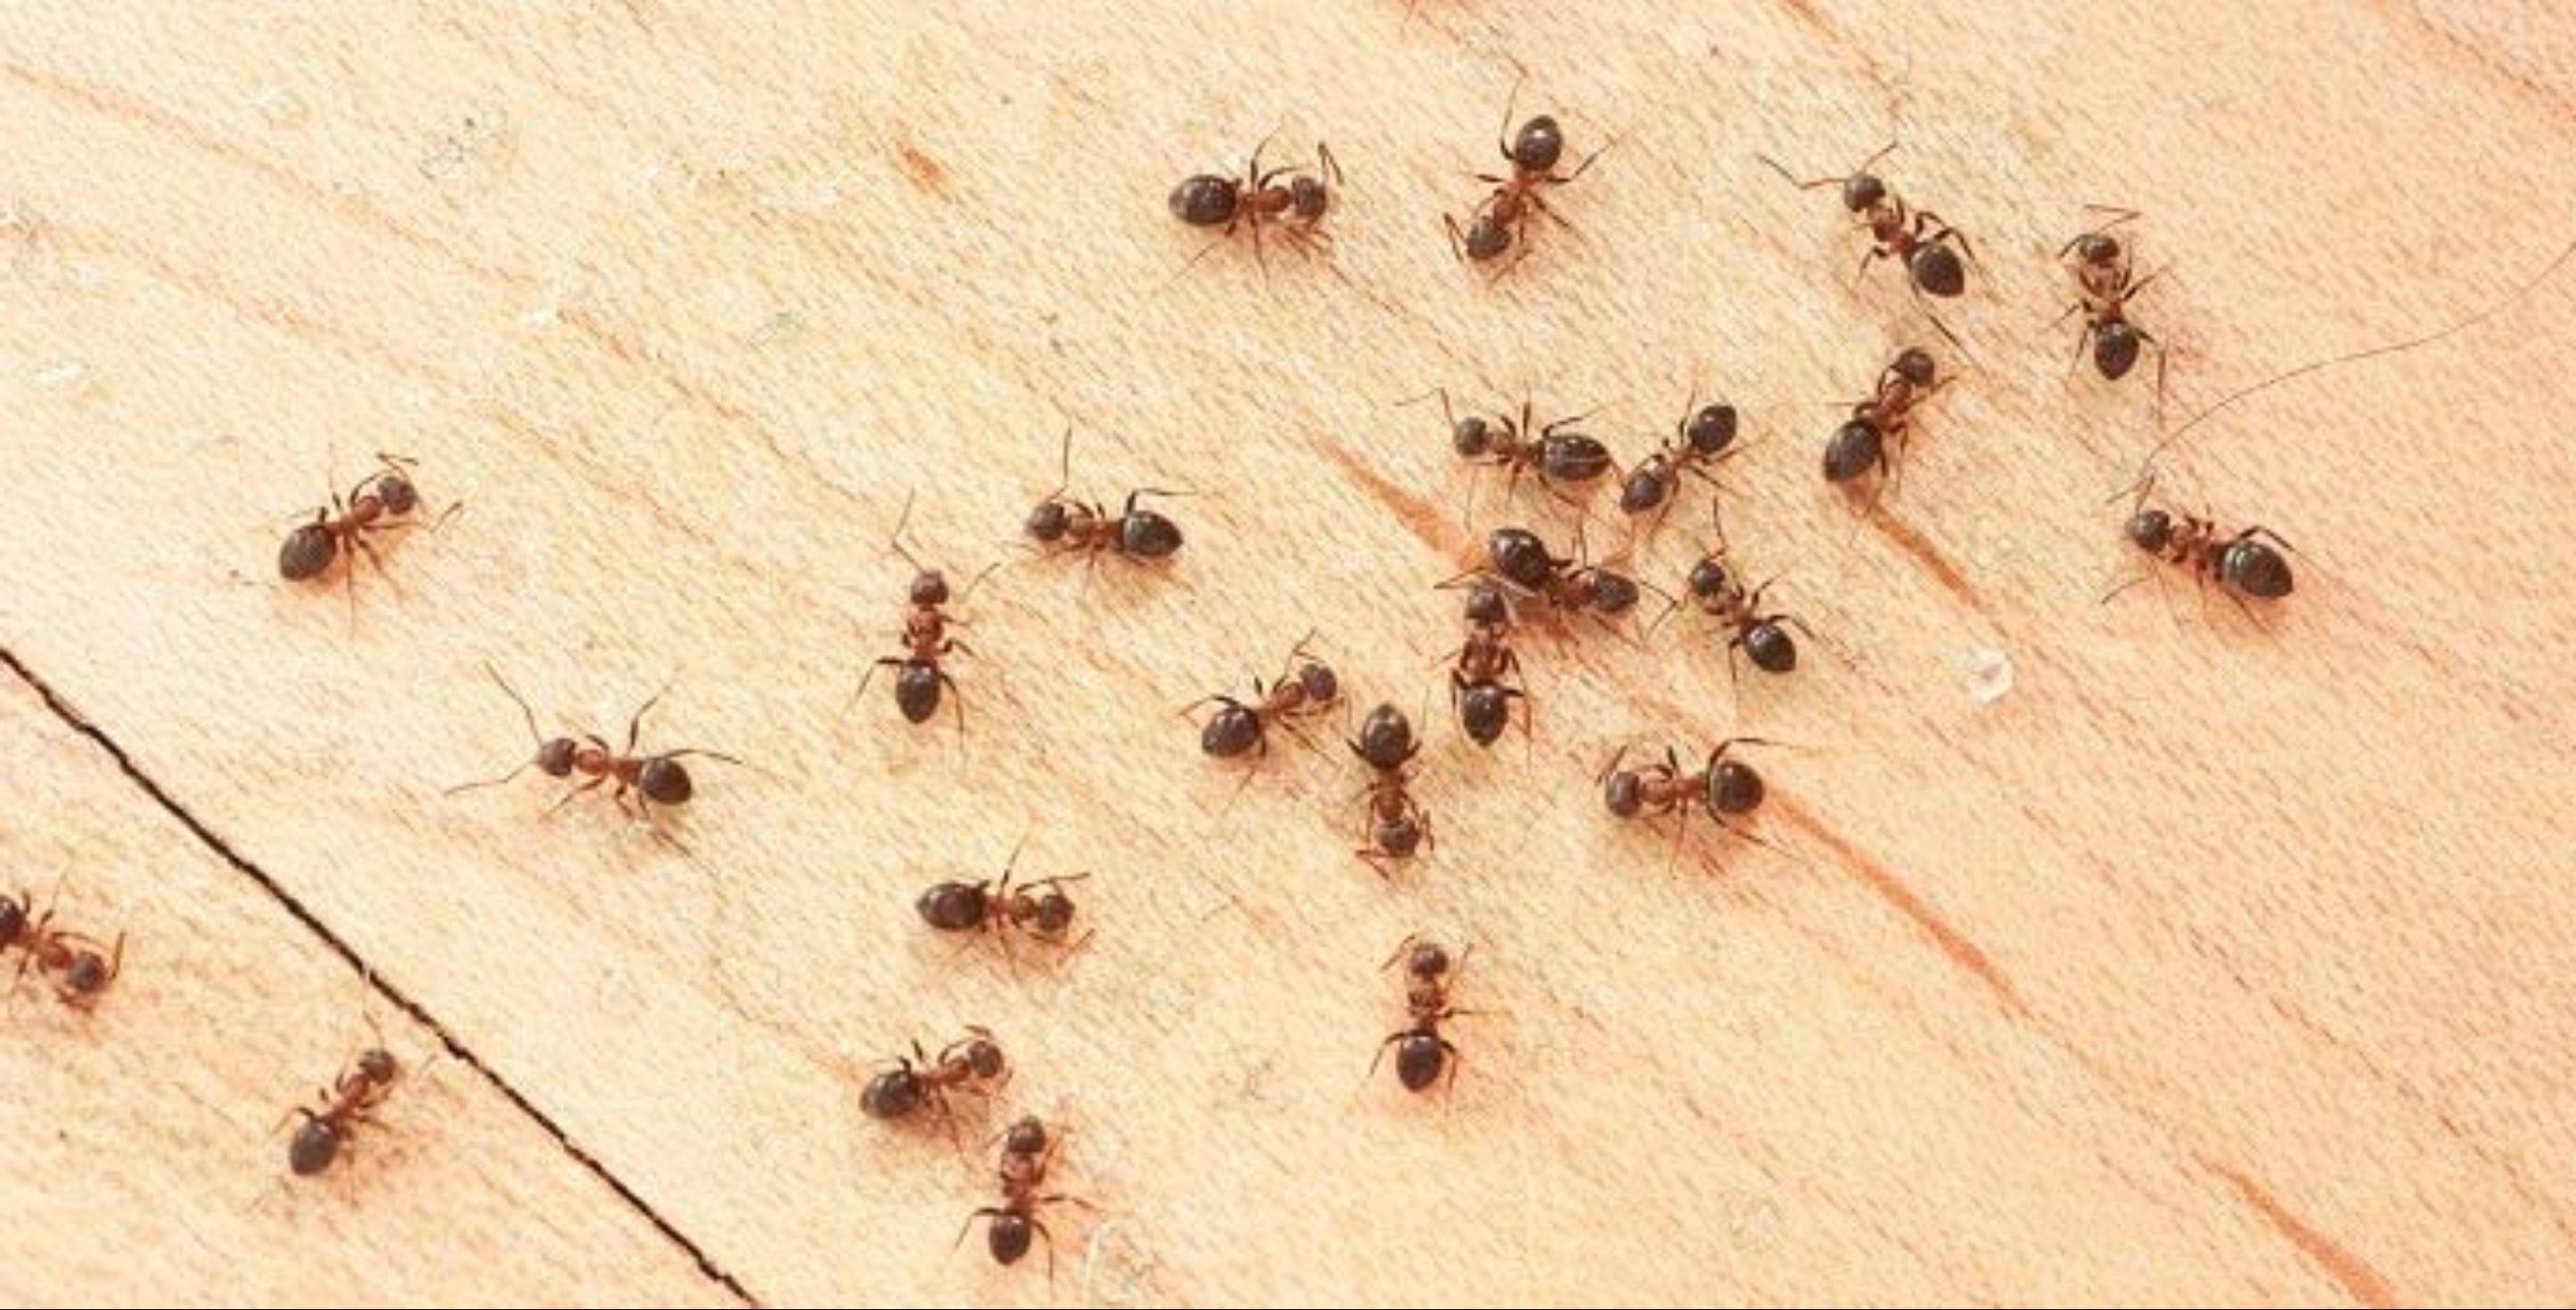 Домашние муравьи откуда берутся в квартире и как избавиться?